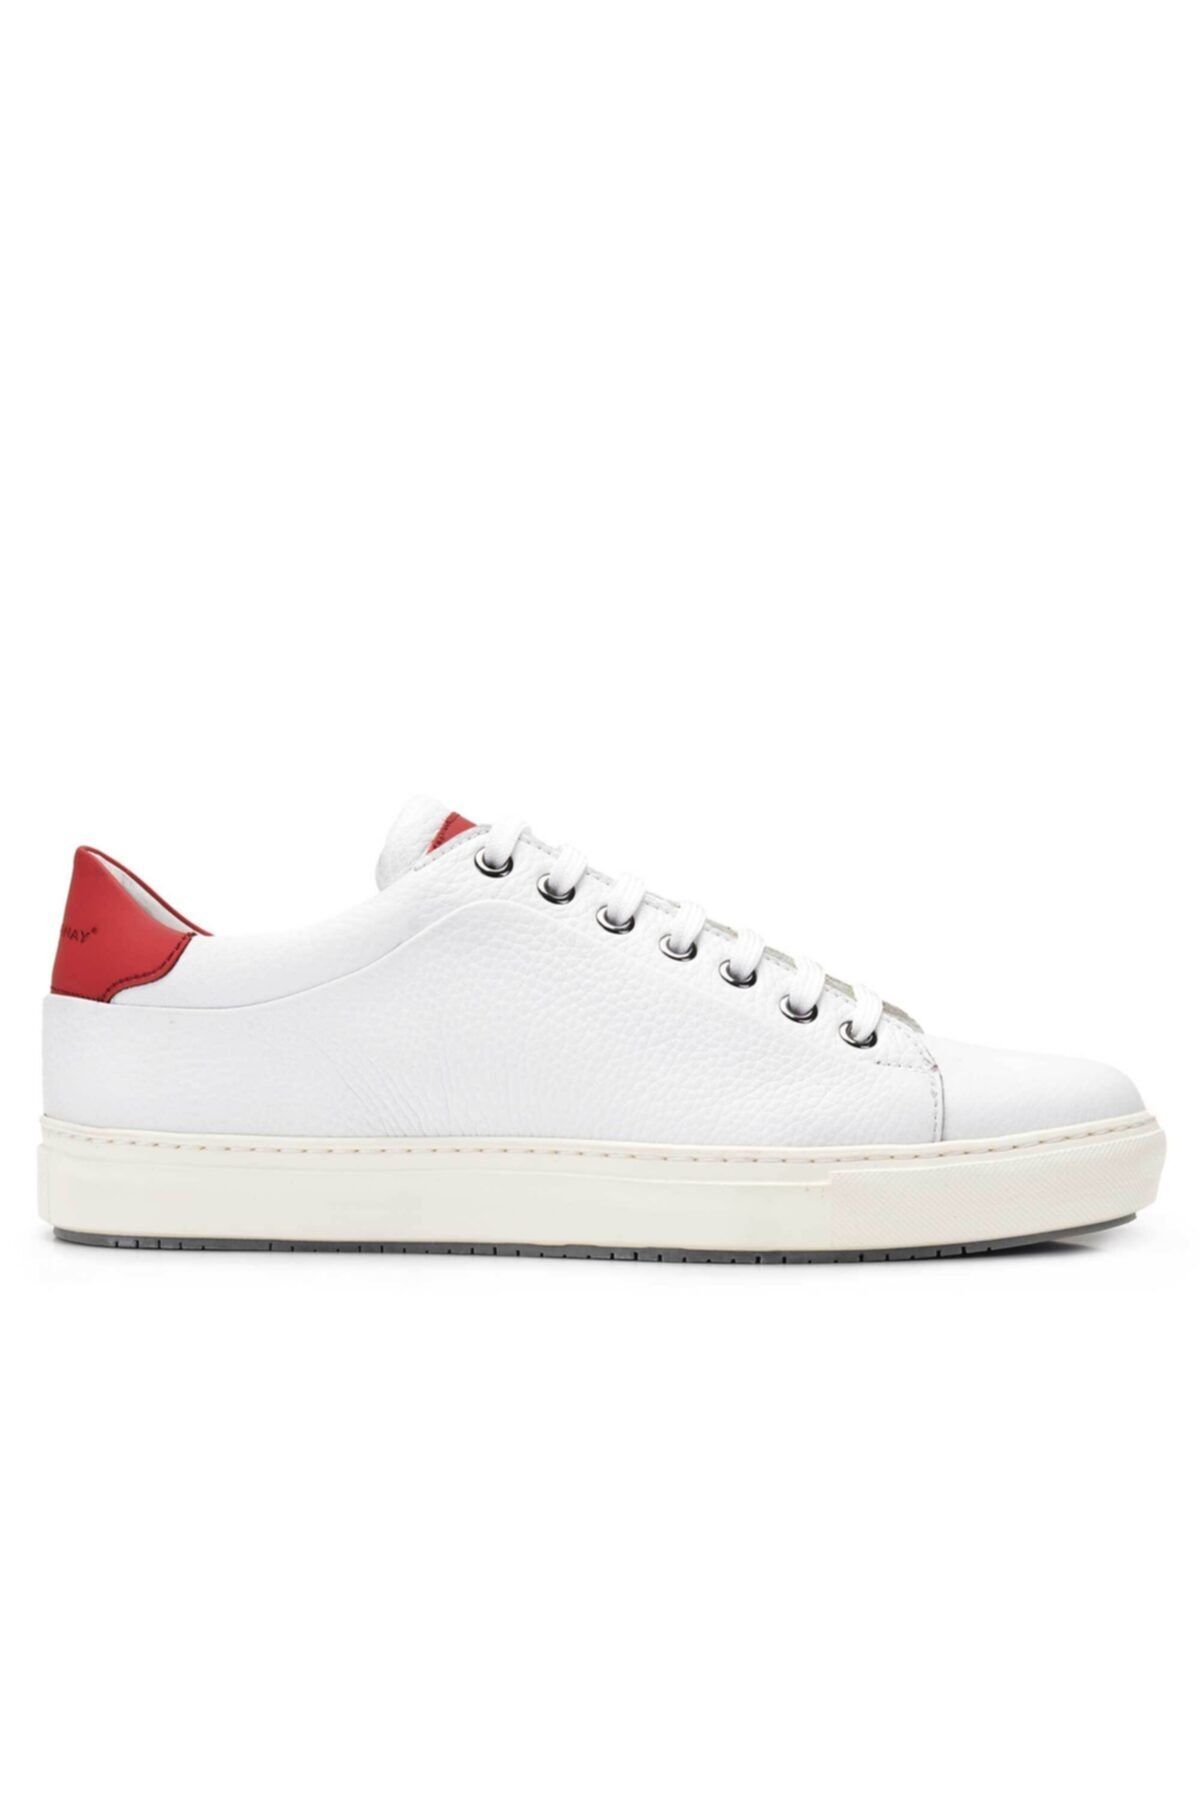 Nevzat Onay Hakiki Deri Beyaz Sneaker Erkek Ayakkabı -11679-